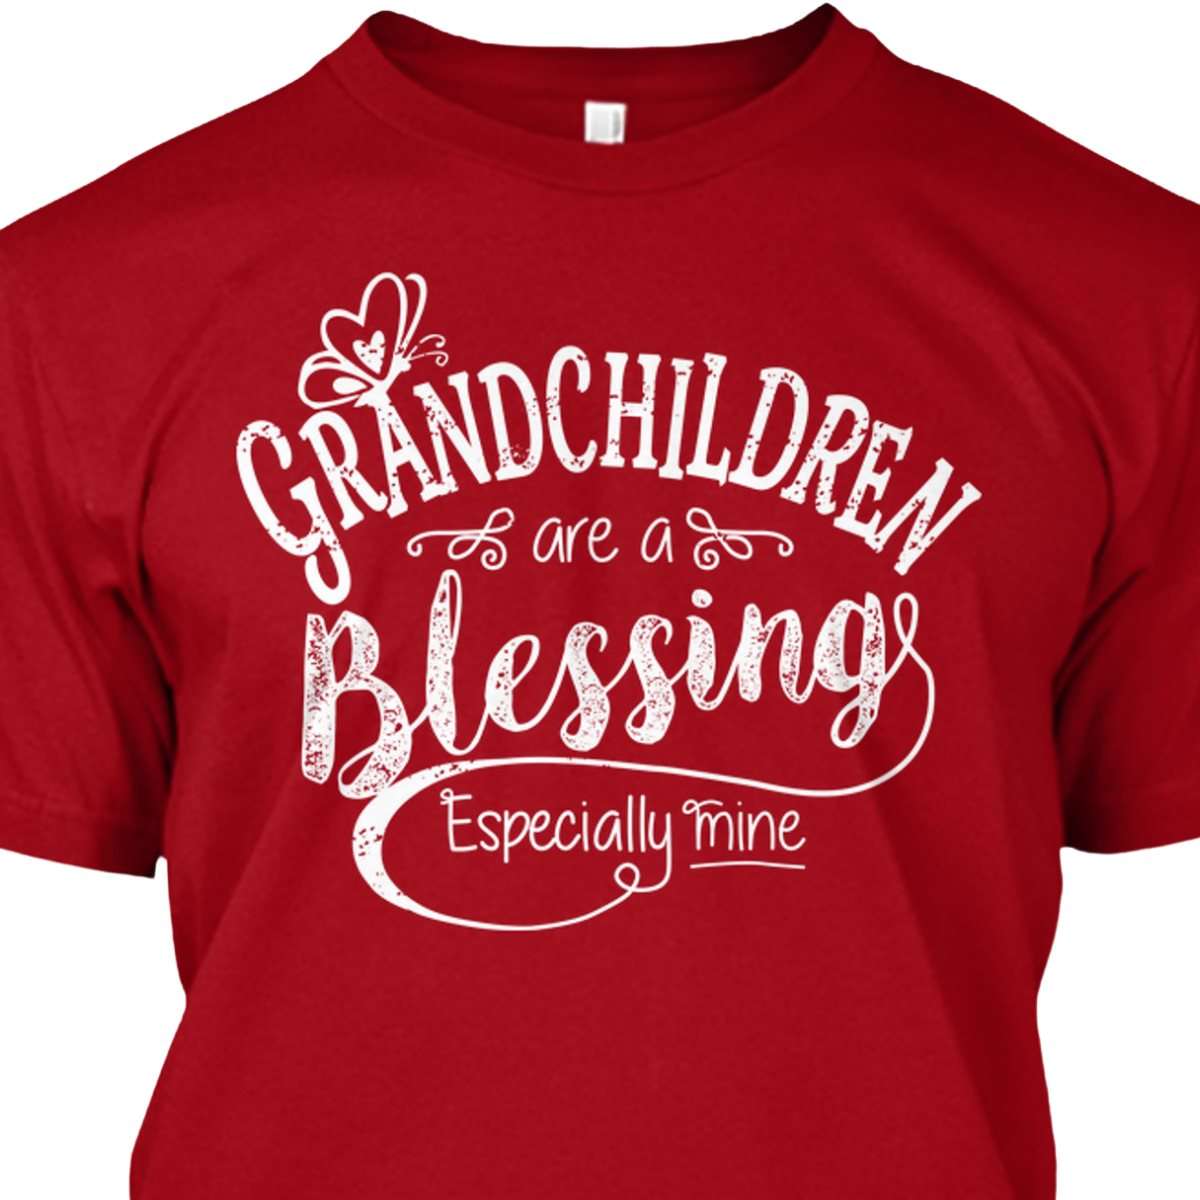 Grandchildren are a blessing especially mine